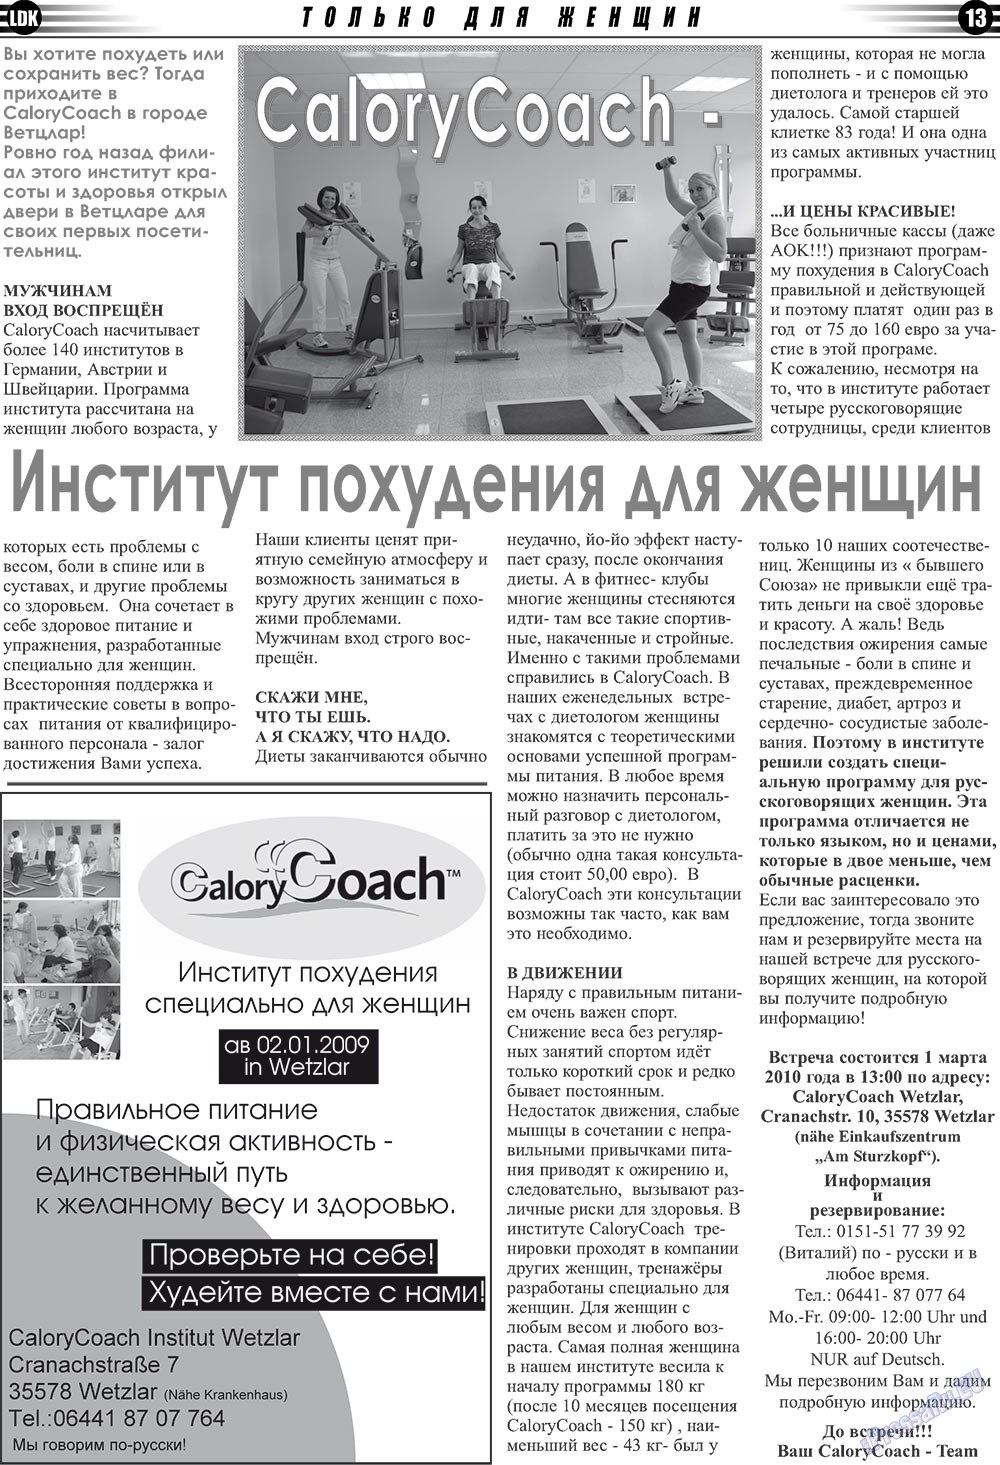 LDK по-русски (газета). 2010 год, номер 2, стр. 13